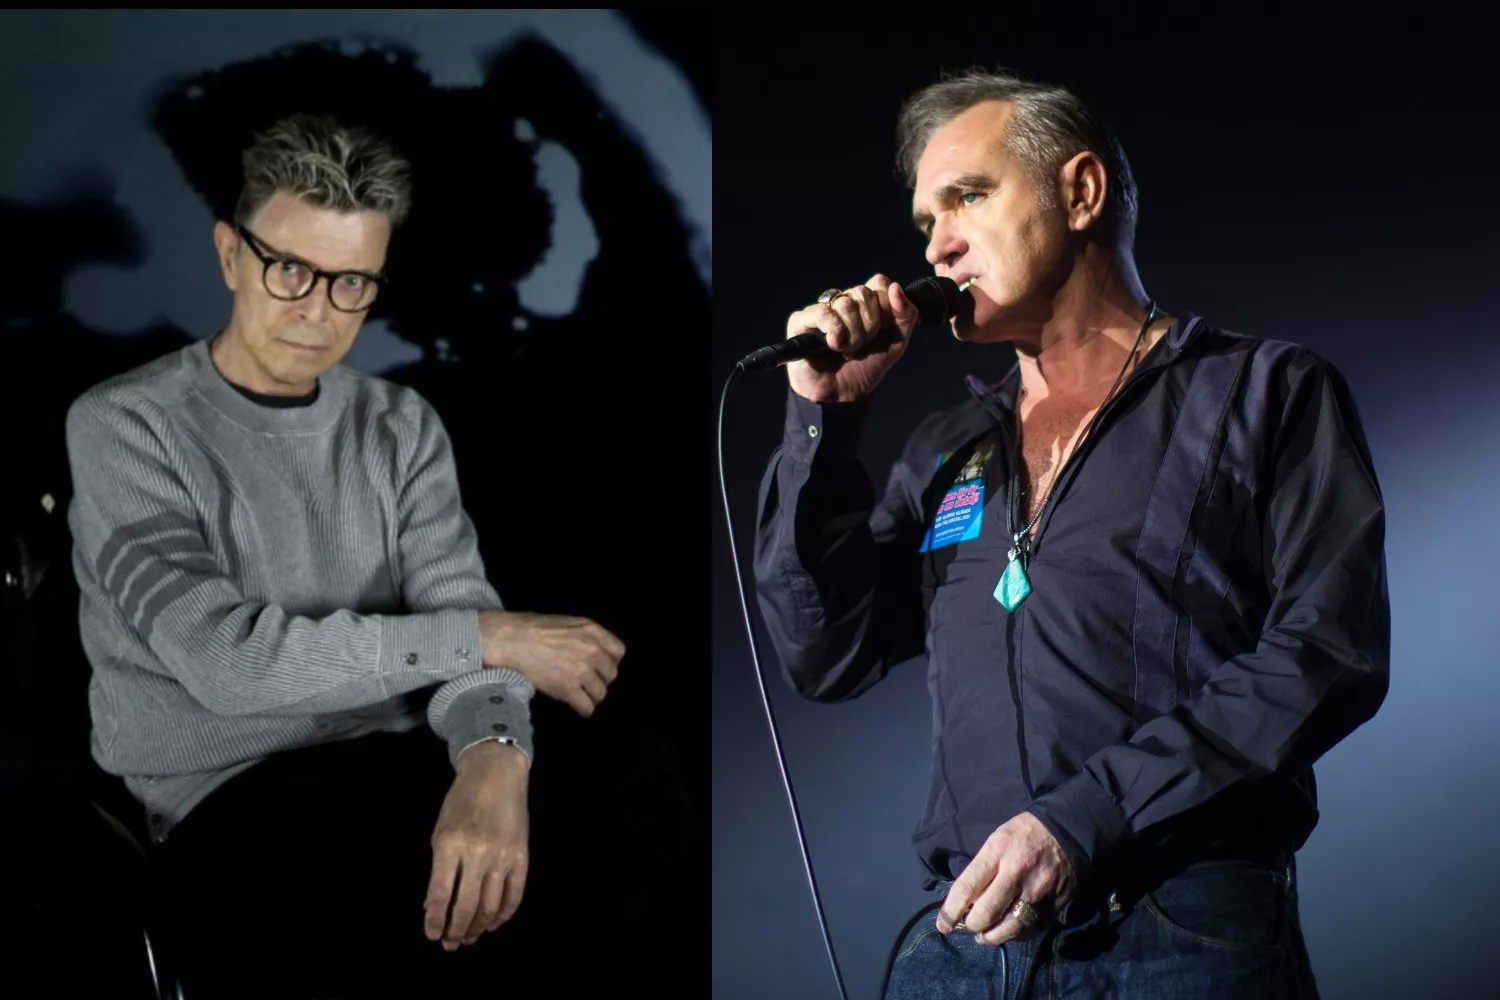 BAKSPEJLET: David Bowies turné med Morrissey – sprang fra i vrede